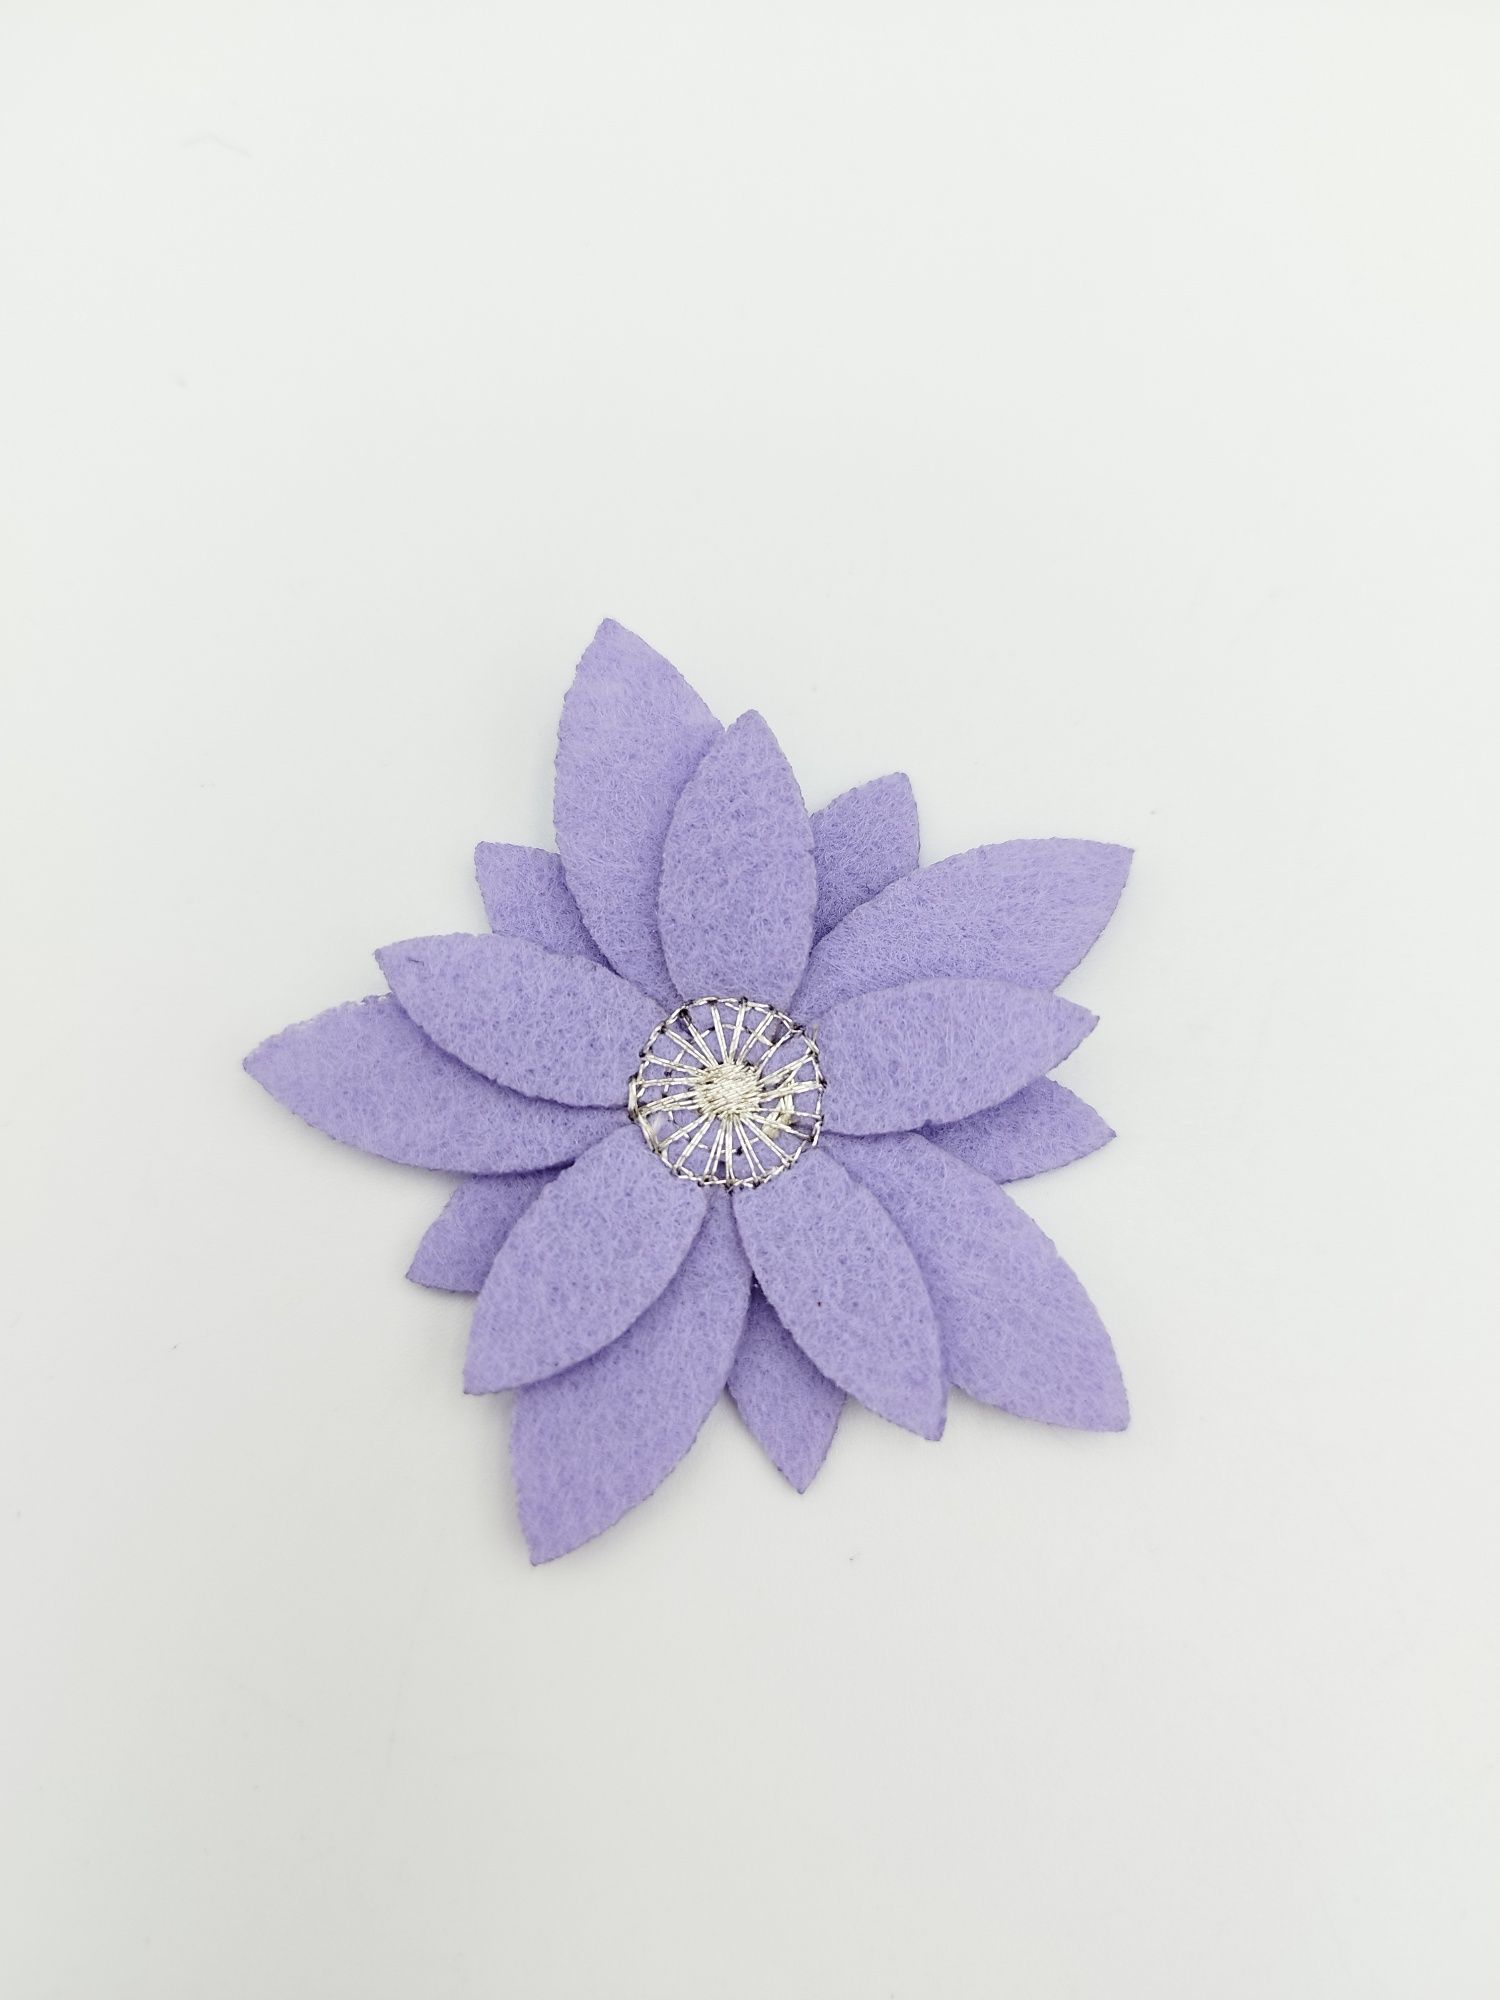 Aplikacja, naszywka kwiatek. Jasny fiolet. Wymiary ok 6 cm x 6 cm.